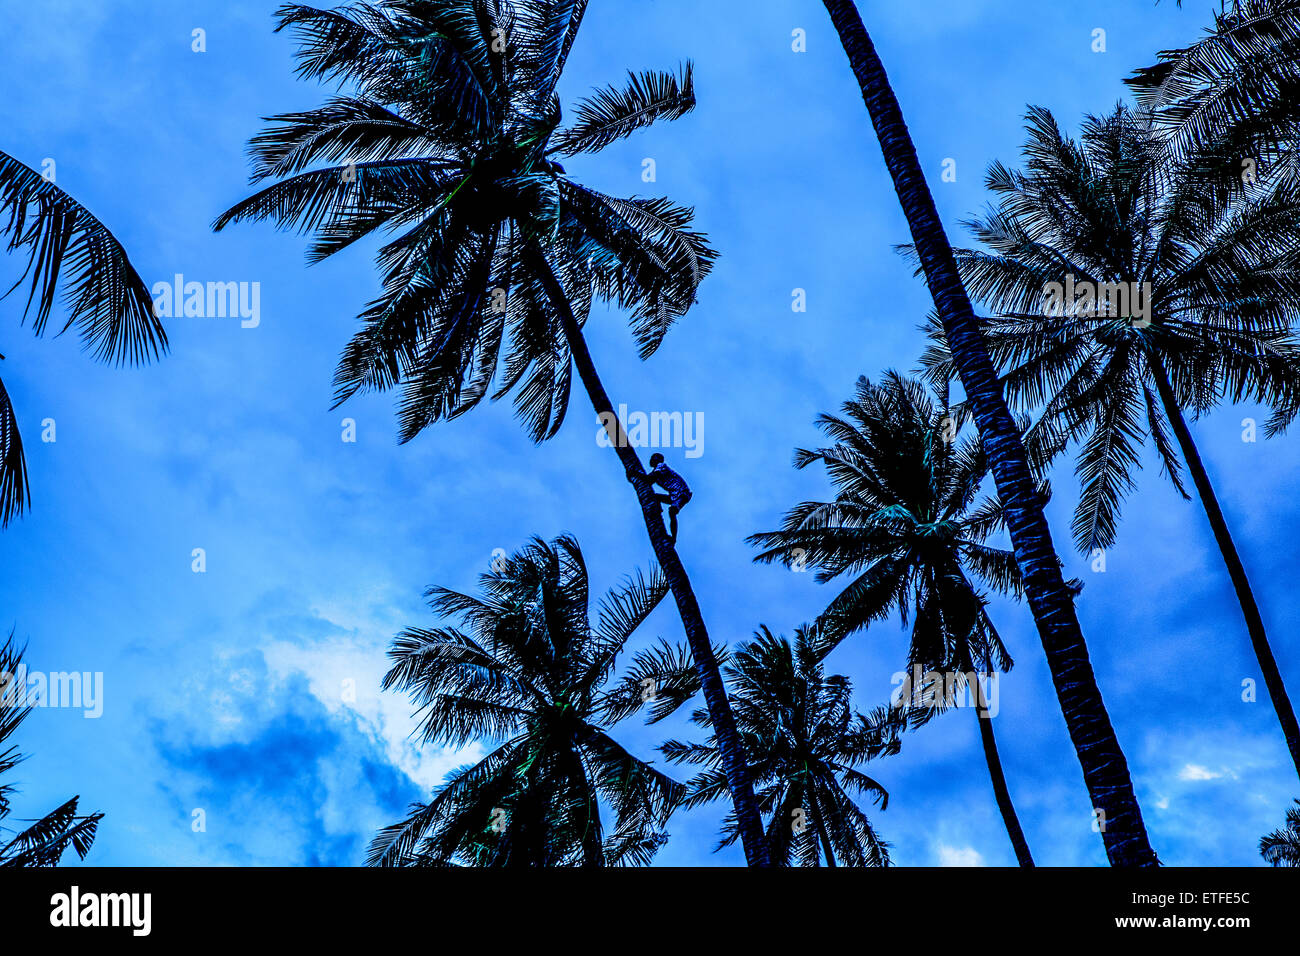 L'Asie. La Thaïlande. La mer d'Andaman. L'île de Koh Lanta. Klong Khong Beach. Un palmier escalade paysan à cueillir les noix de coco. Banque D'Images